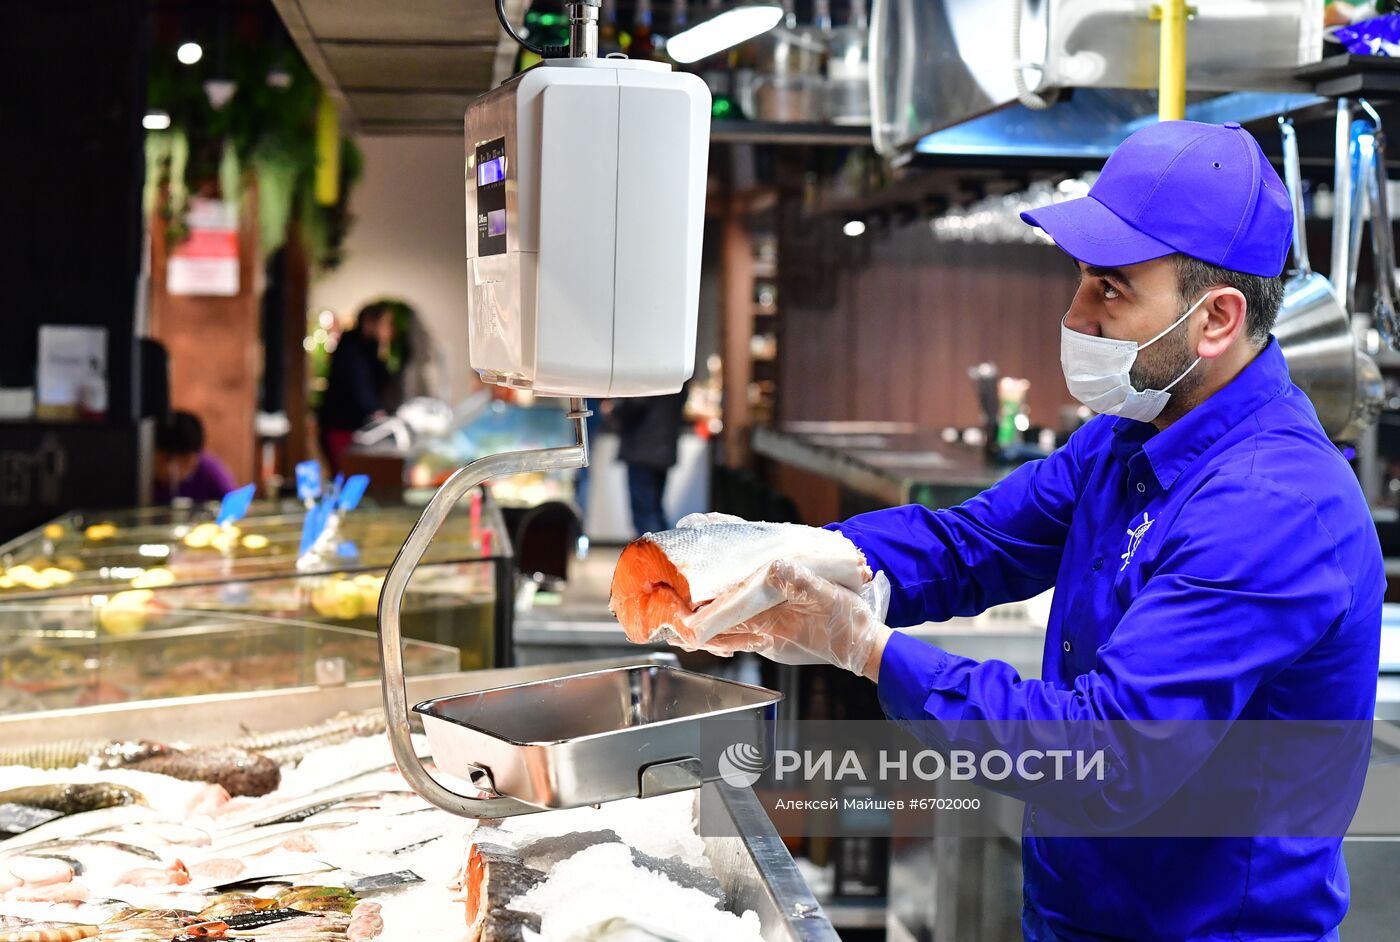 Продажа икры и рыбы в Москве